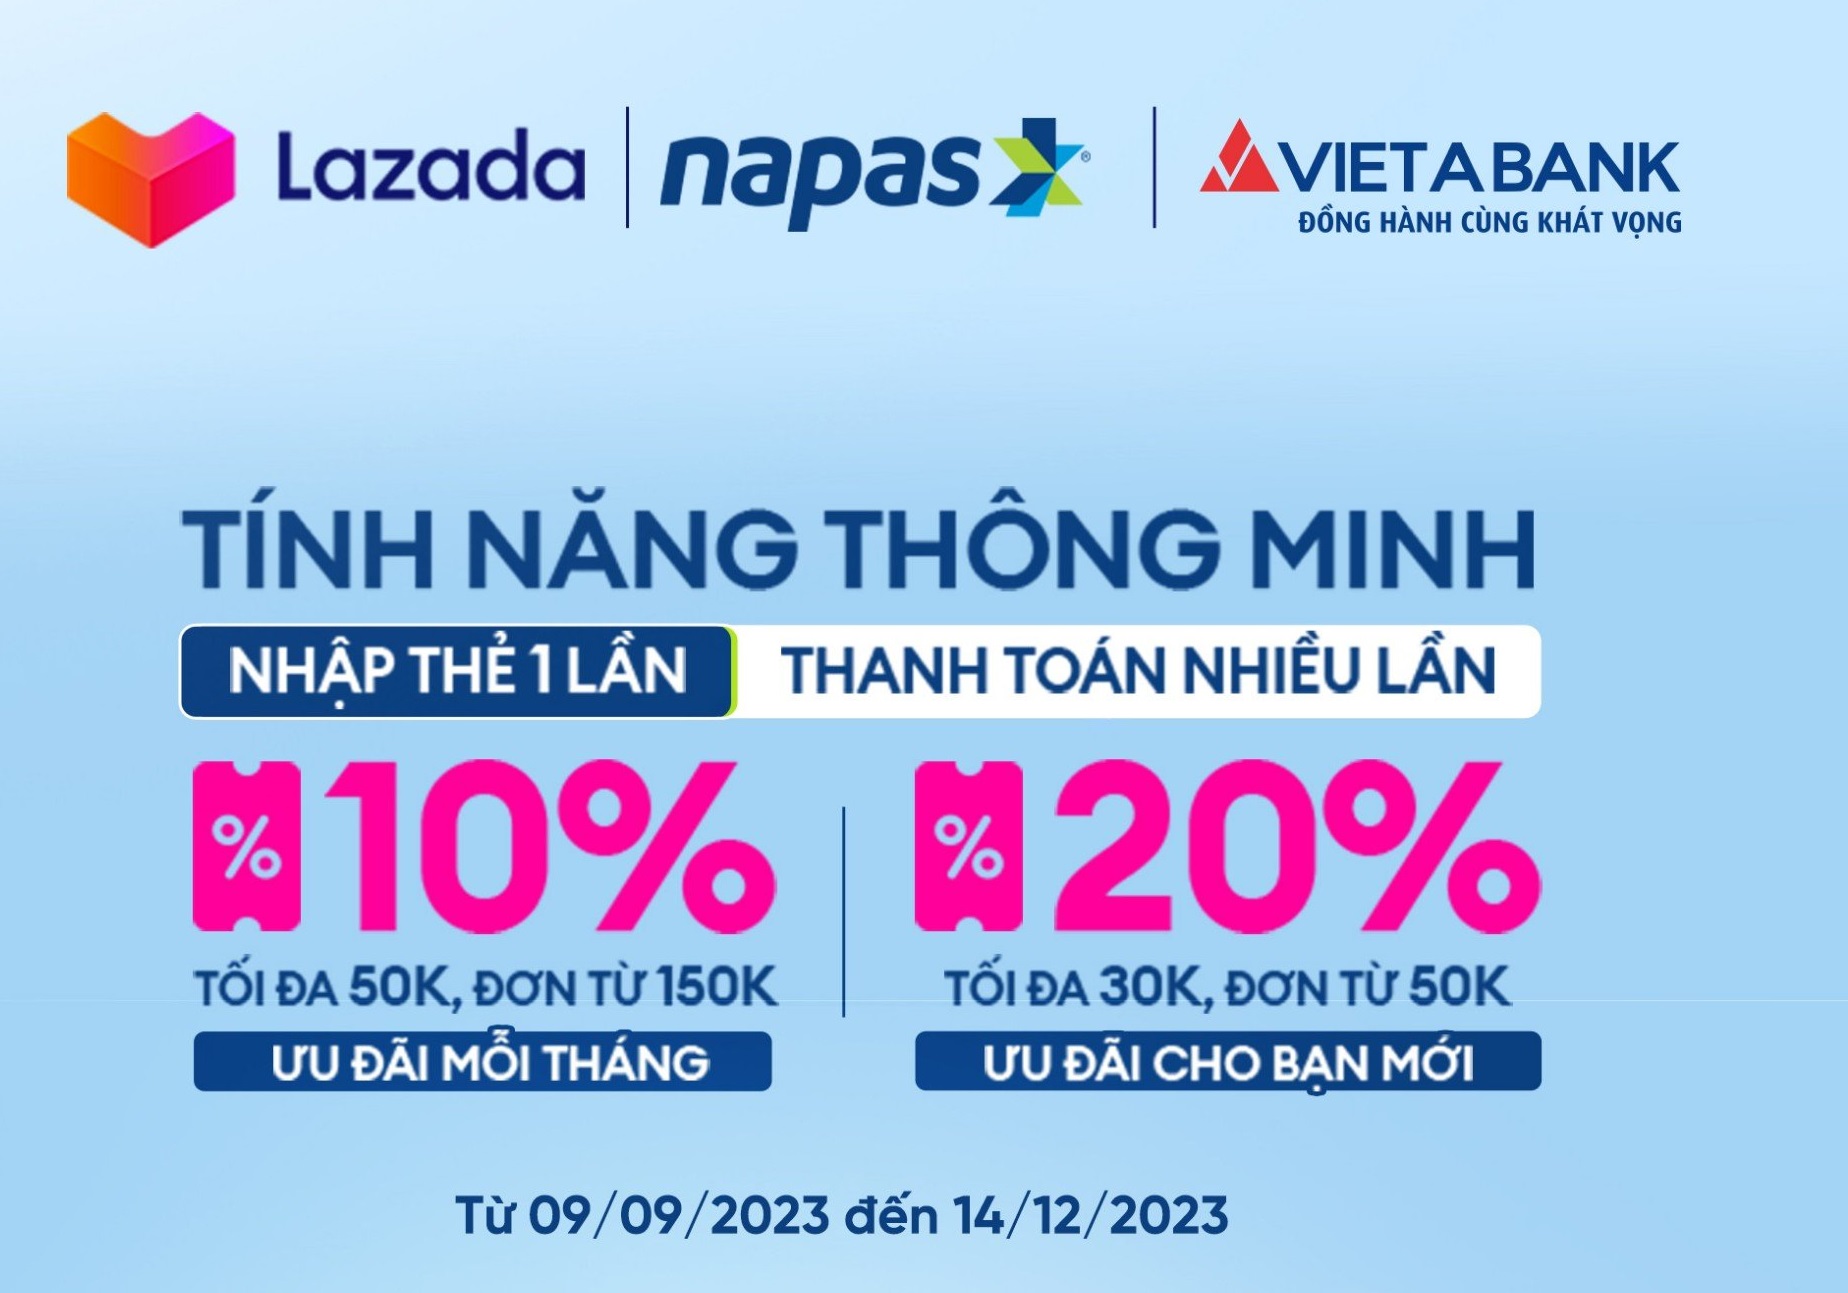 Mua sắm trên Lazada, tiết kiệm tới 20% khi thanh toán bằng thẻ VietABank NAPAS 